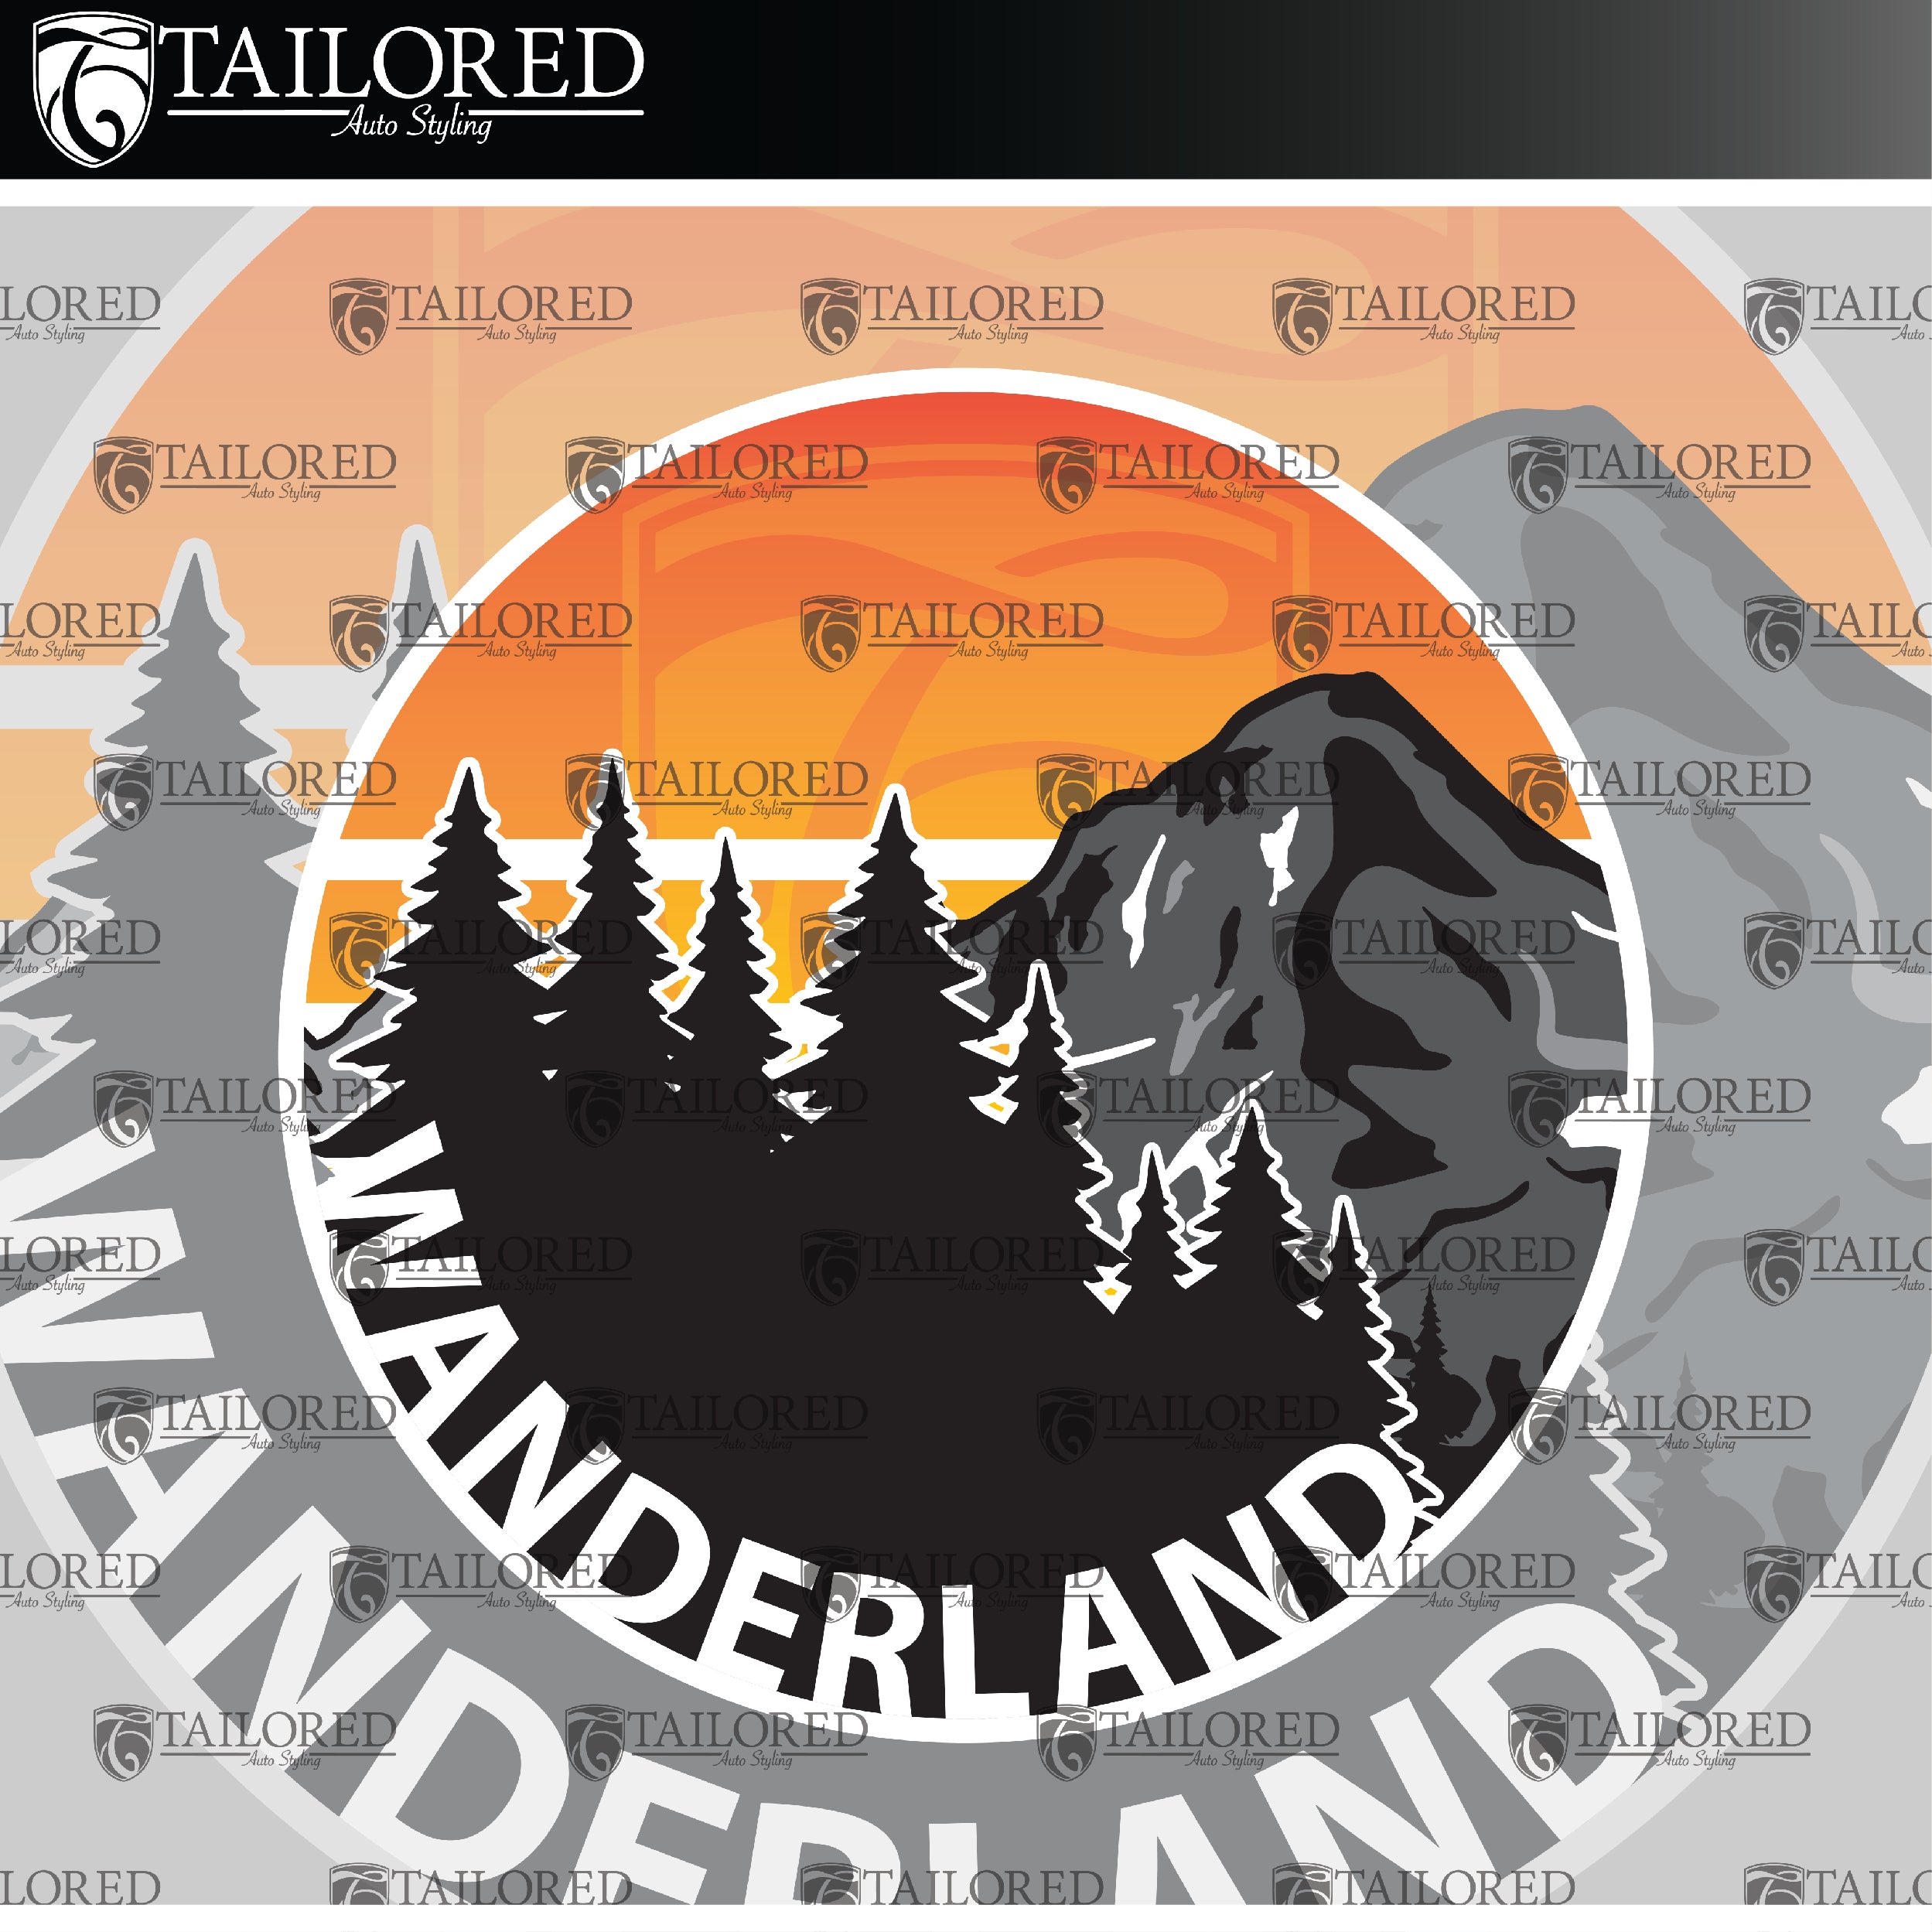 Wanderland Sticker Pack